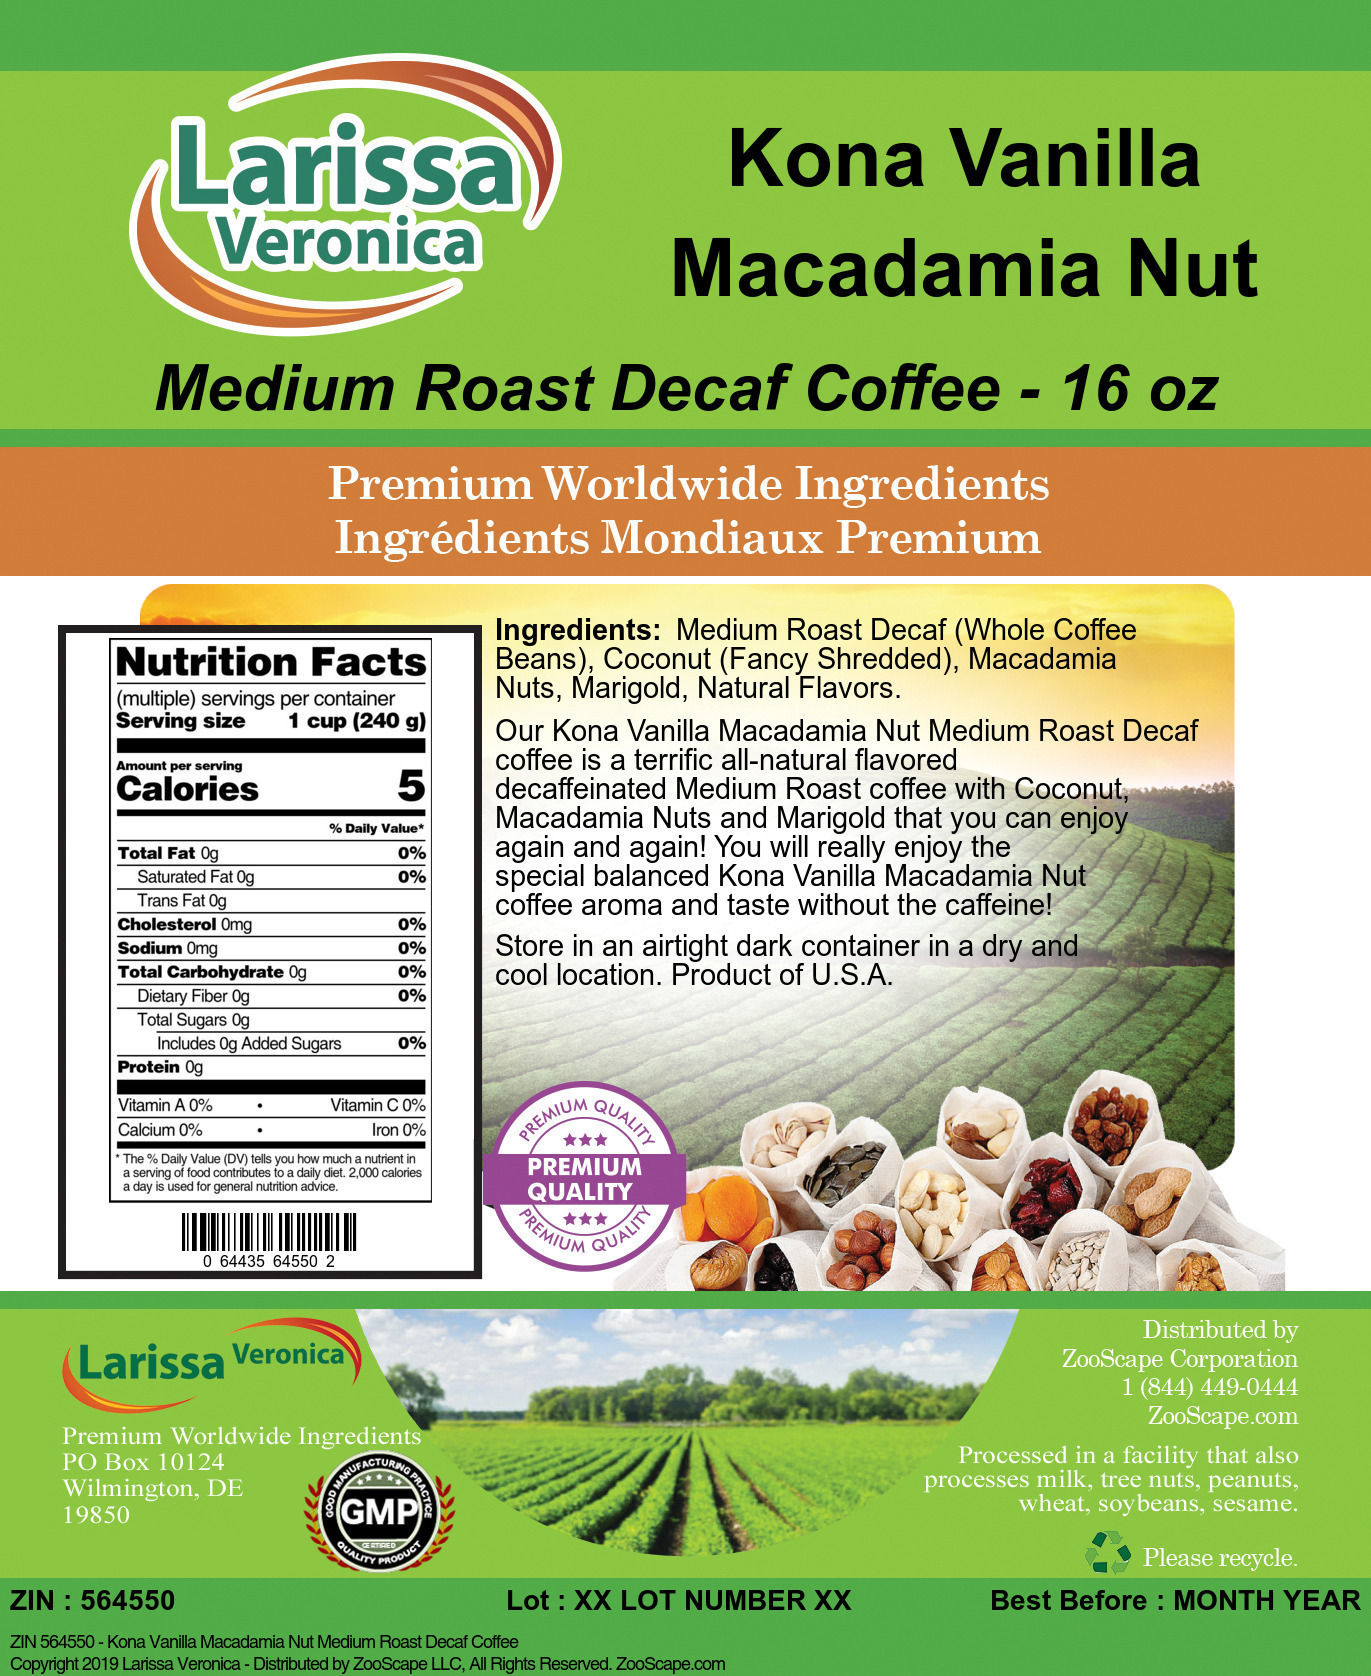 Kona Vanilla Macadamia Nut Medium Roast Decaf Coffee - Label